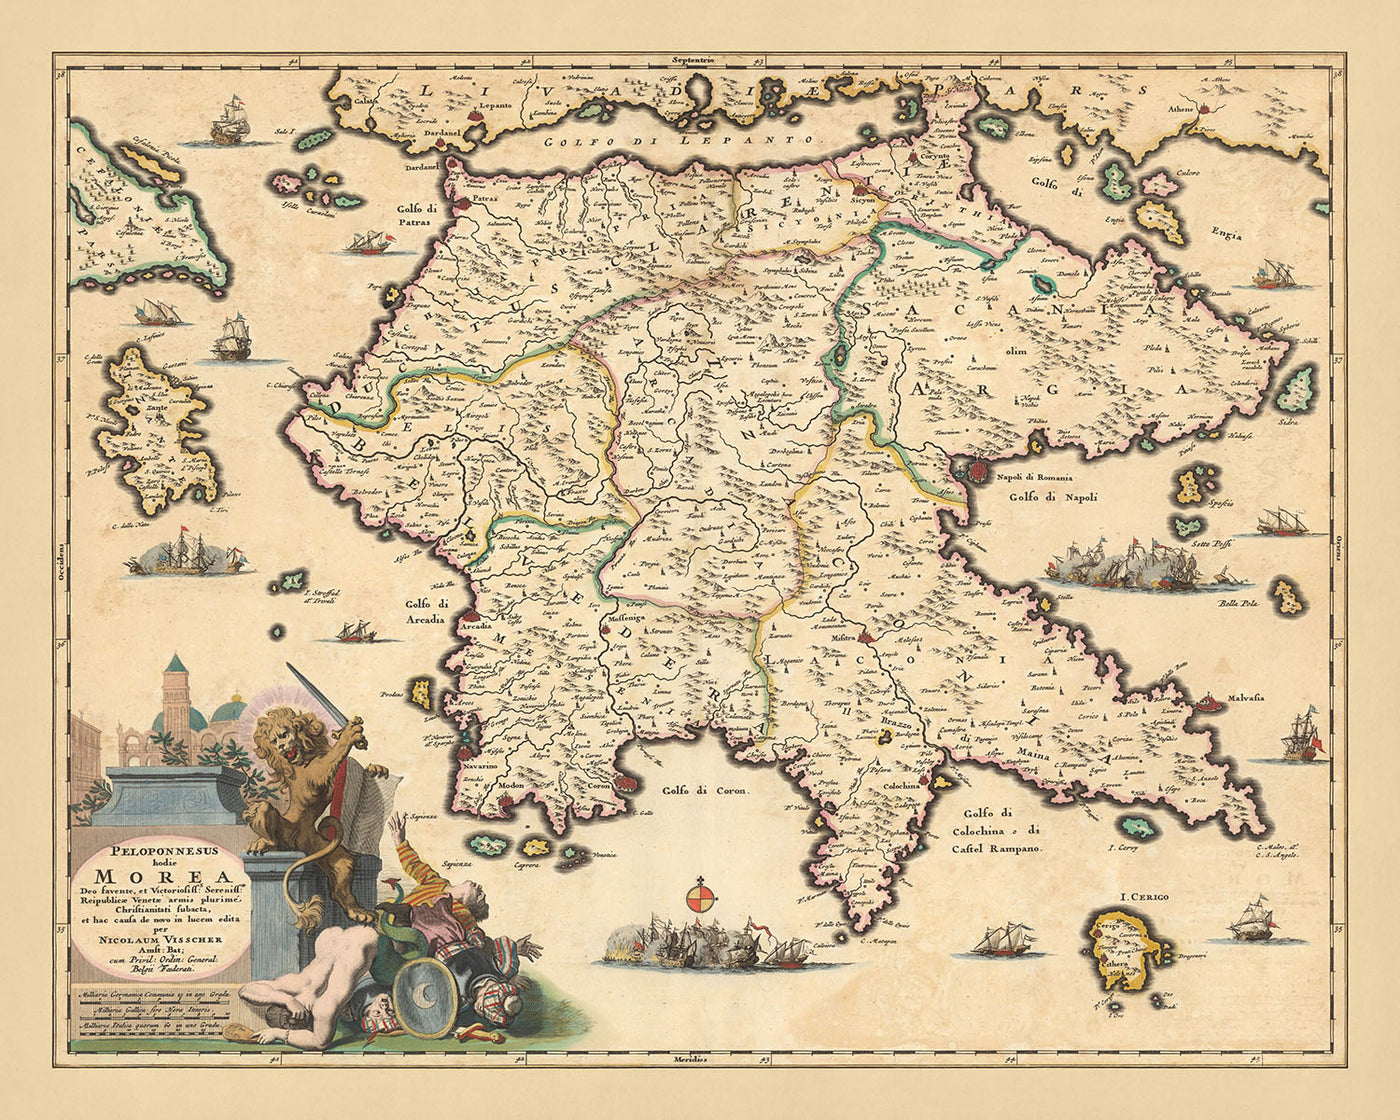 Alte Karte von Peloponnes, Griechenland von Visscher, 1690: Patras, Zakinthos, Kalamata, Nafplion, Saronische Inseln